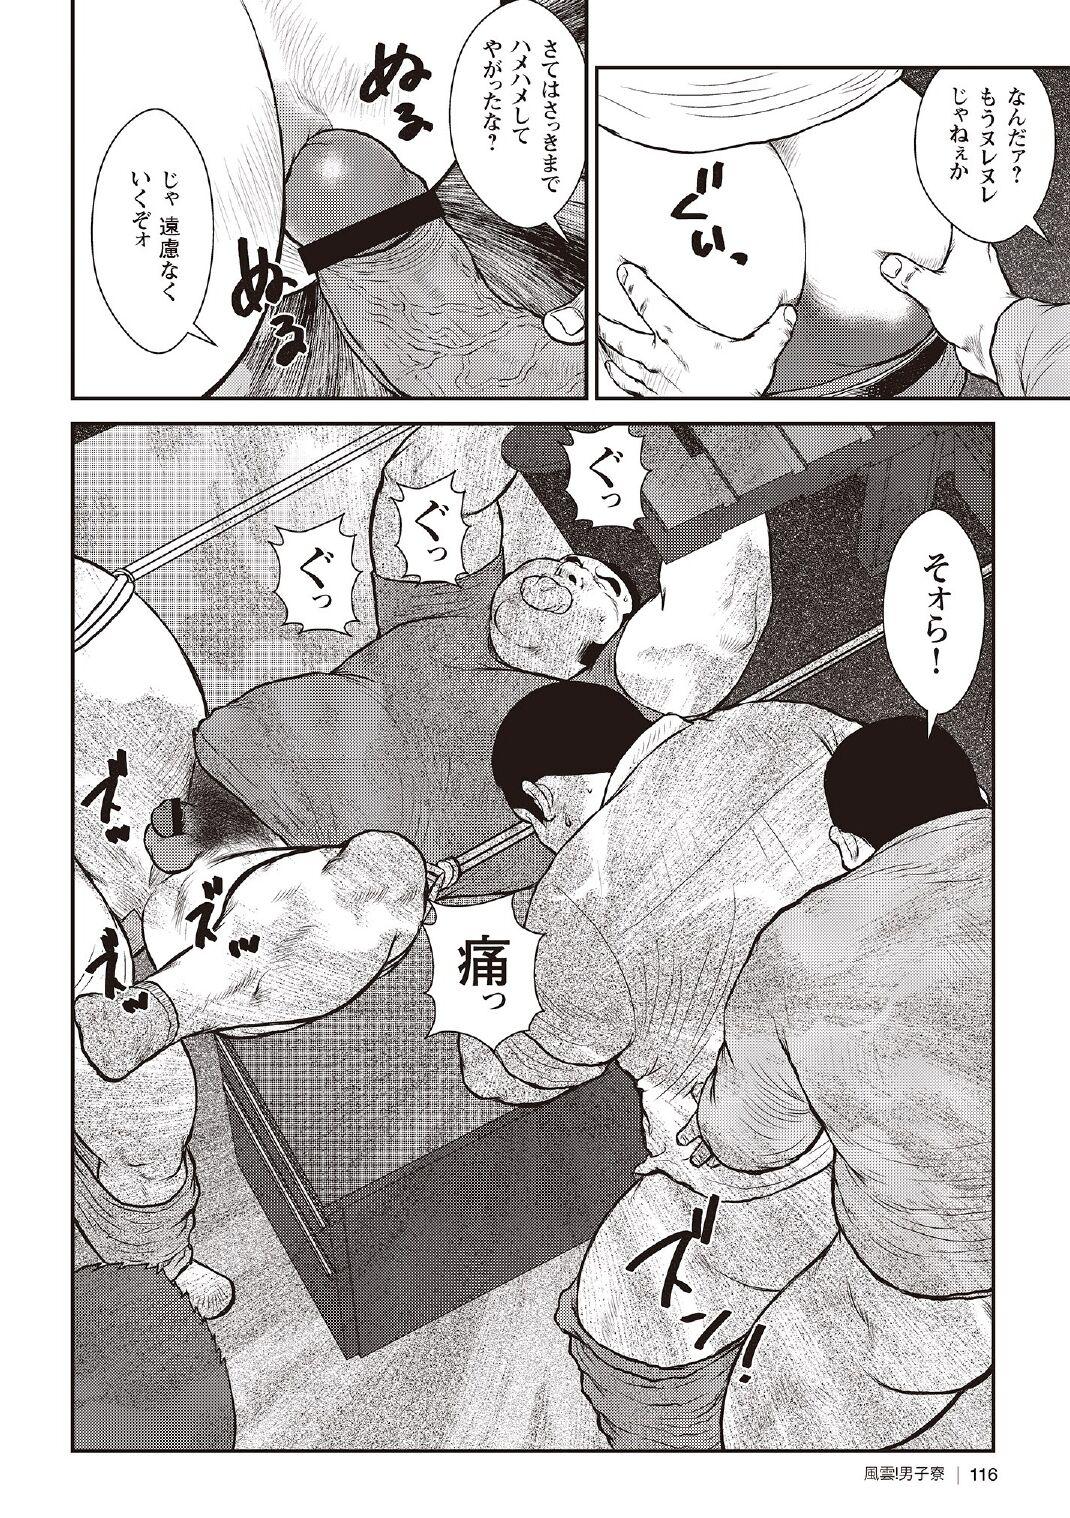 [Ebisubashi Seizou] Ebisubashi Seizou Tanpen Manga Shuu 2 Fuuun! Danshi Ryou [Bunsatsuban] PART 3 Bousou Hantou Taifuu Zensen Ch. 3 ~ Ch. 5 [Digital] 45